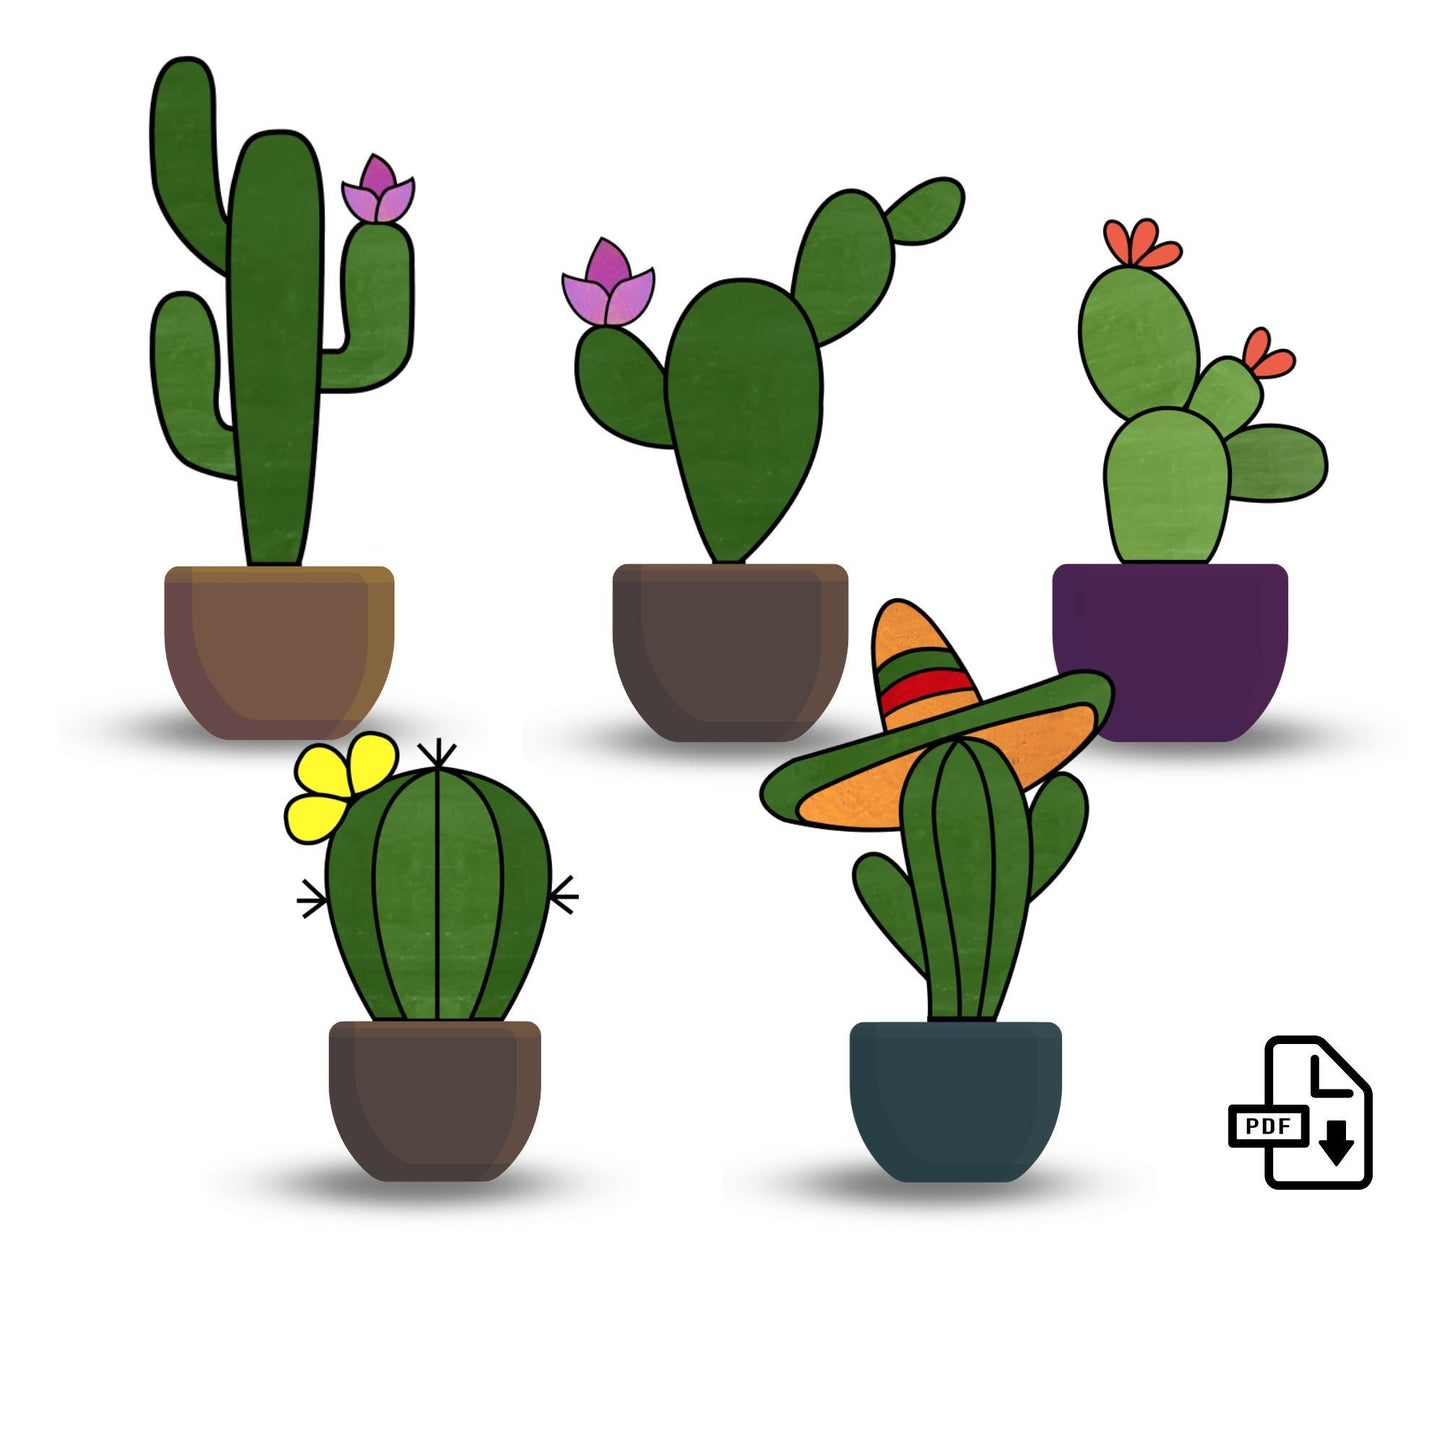 Paquete de patrones de cactus de vidrieras • Patrón de atrapasueños de 5 plantas de cactus